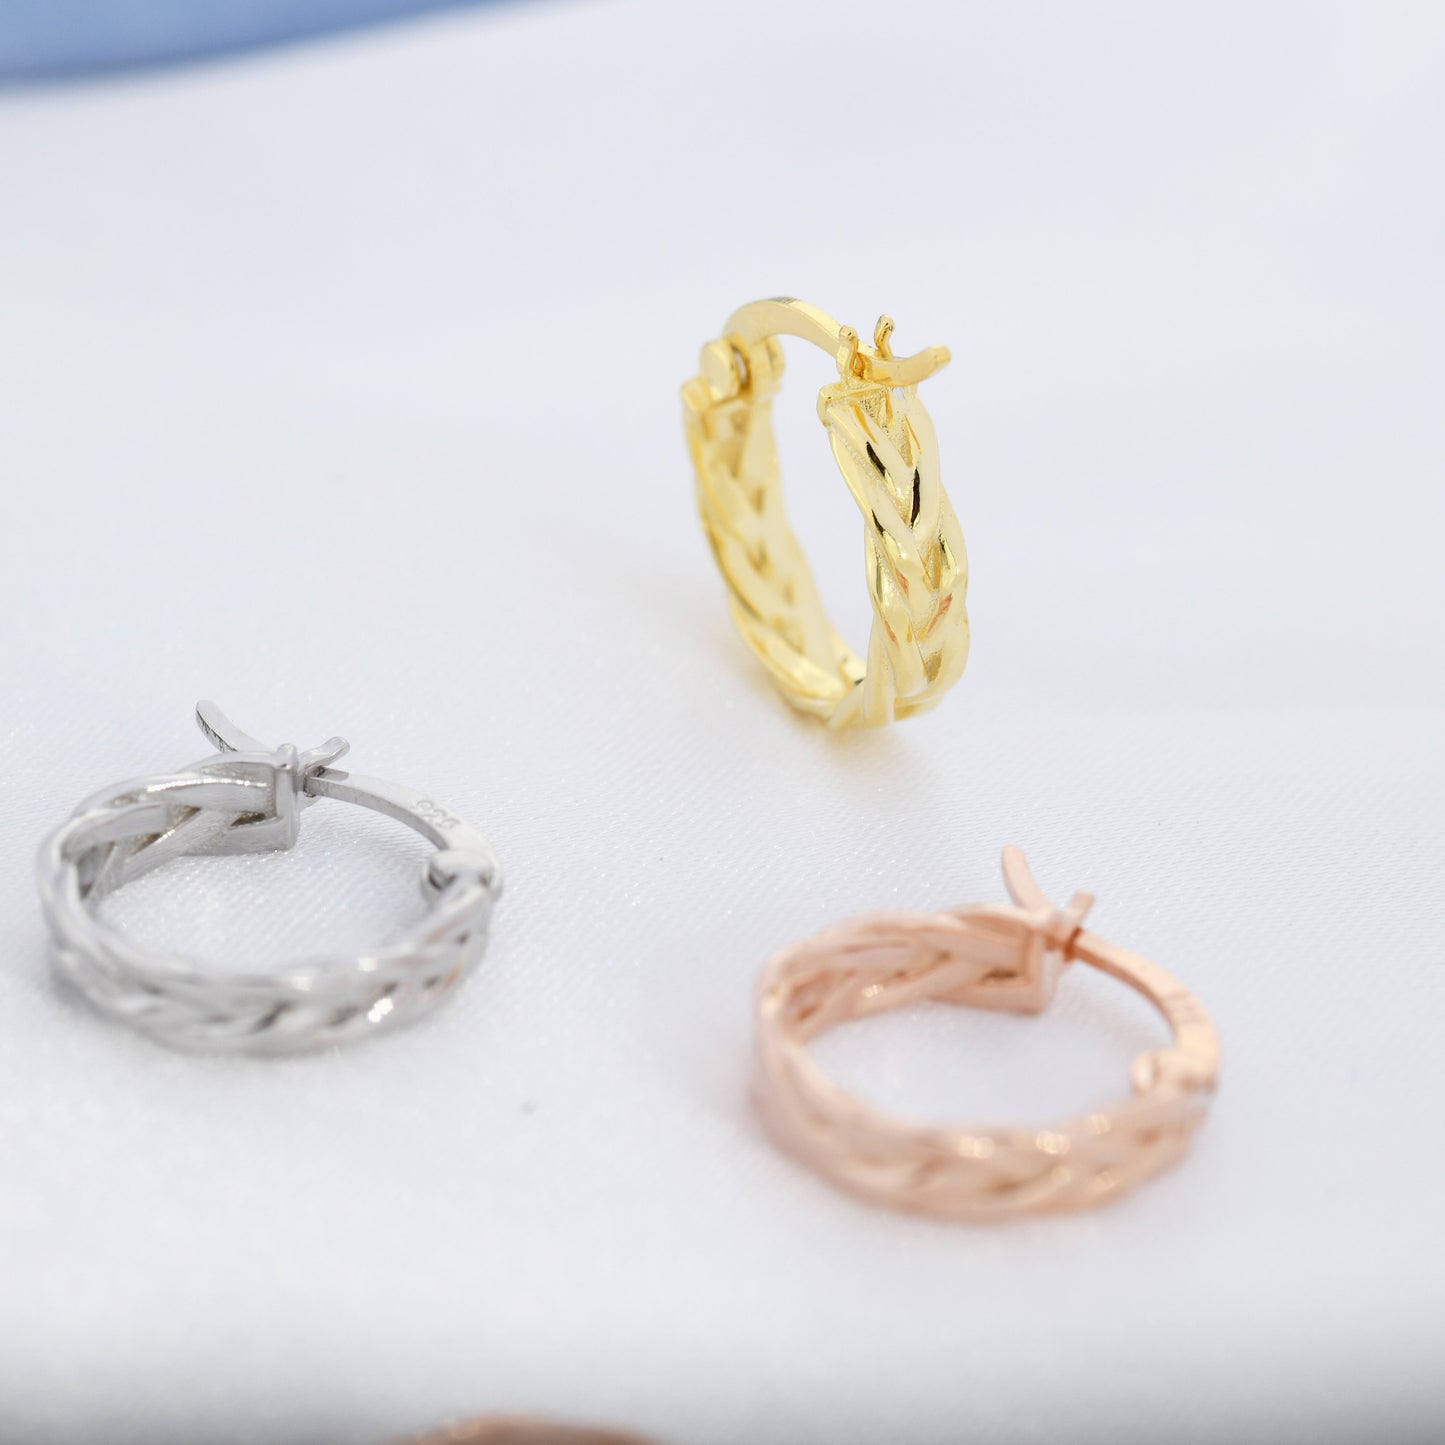 Braided Hoop Earrings in Sterling Silver, Silver or Gold or Rose Gold, Twist Hoops, Braid Geometric Hoop Earrings, 10mm Inner Diameter